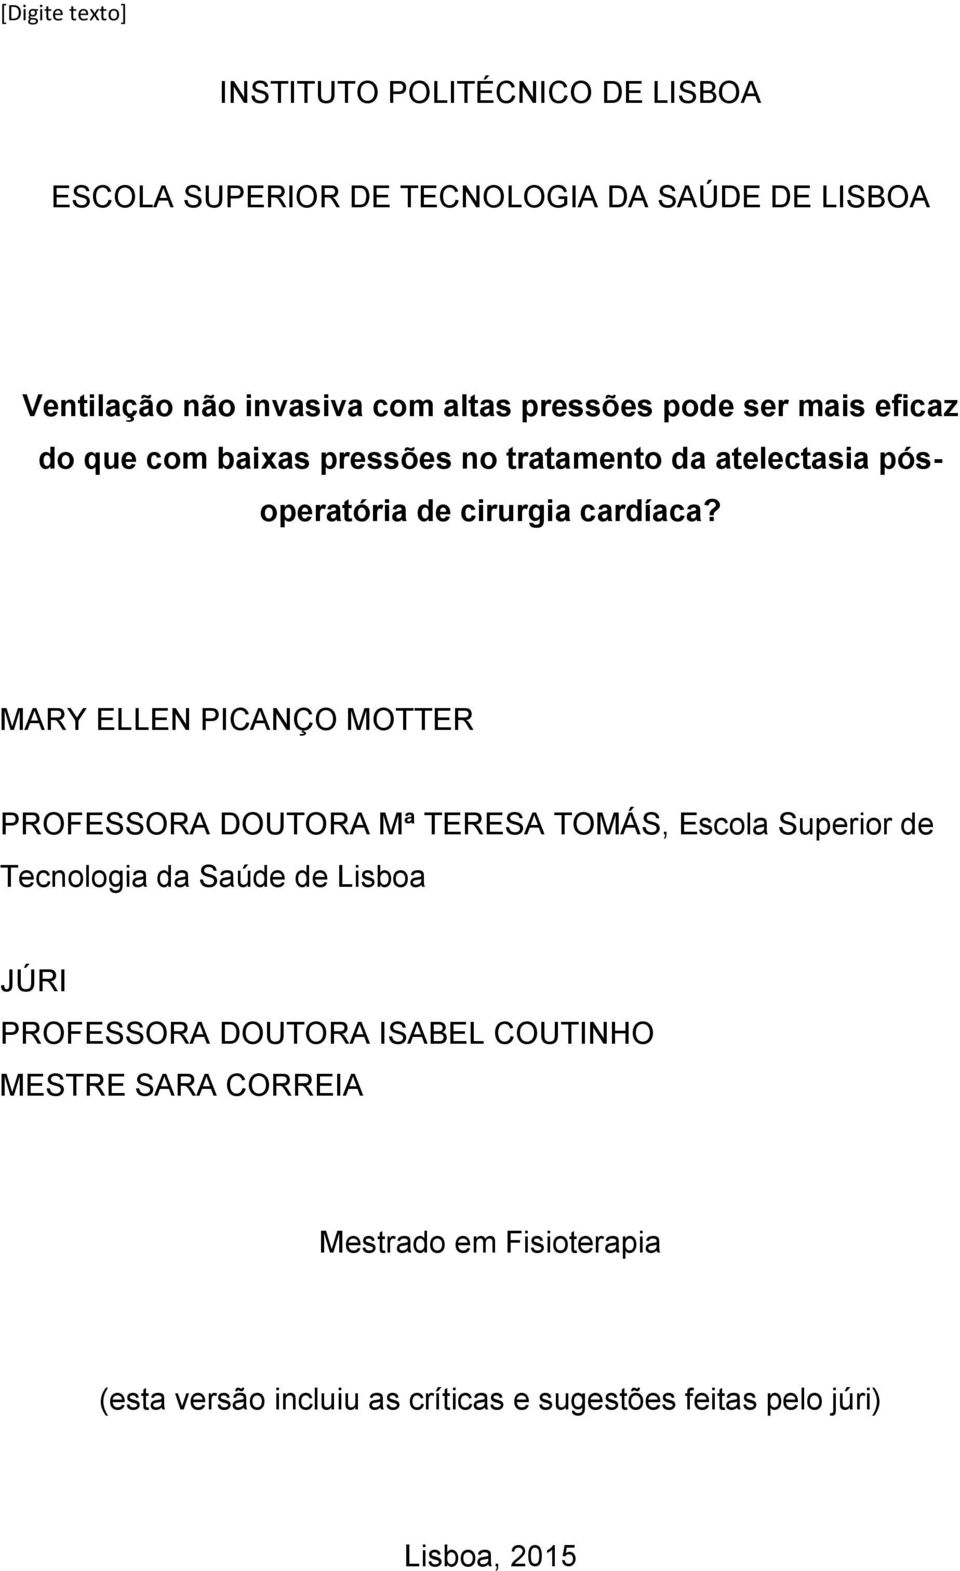 MARY ELLEN PICANÇO MOTTER PROFESSORA DOUTORA Mª TERESA TOMÁS, Escola Superior de Tecnologia da Saúde de Lisboa JÚRI PROFESSORA